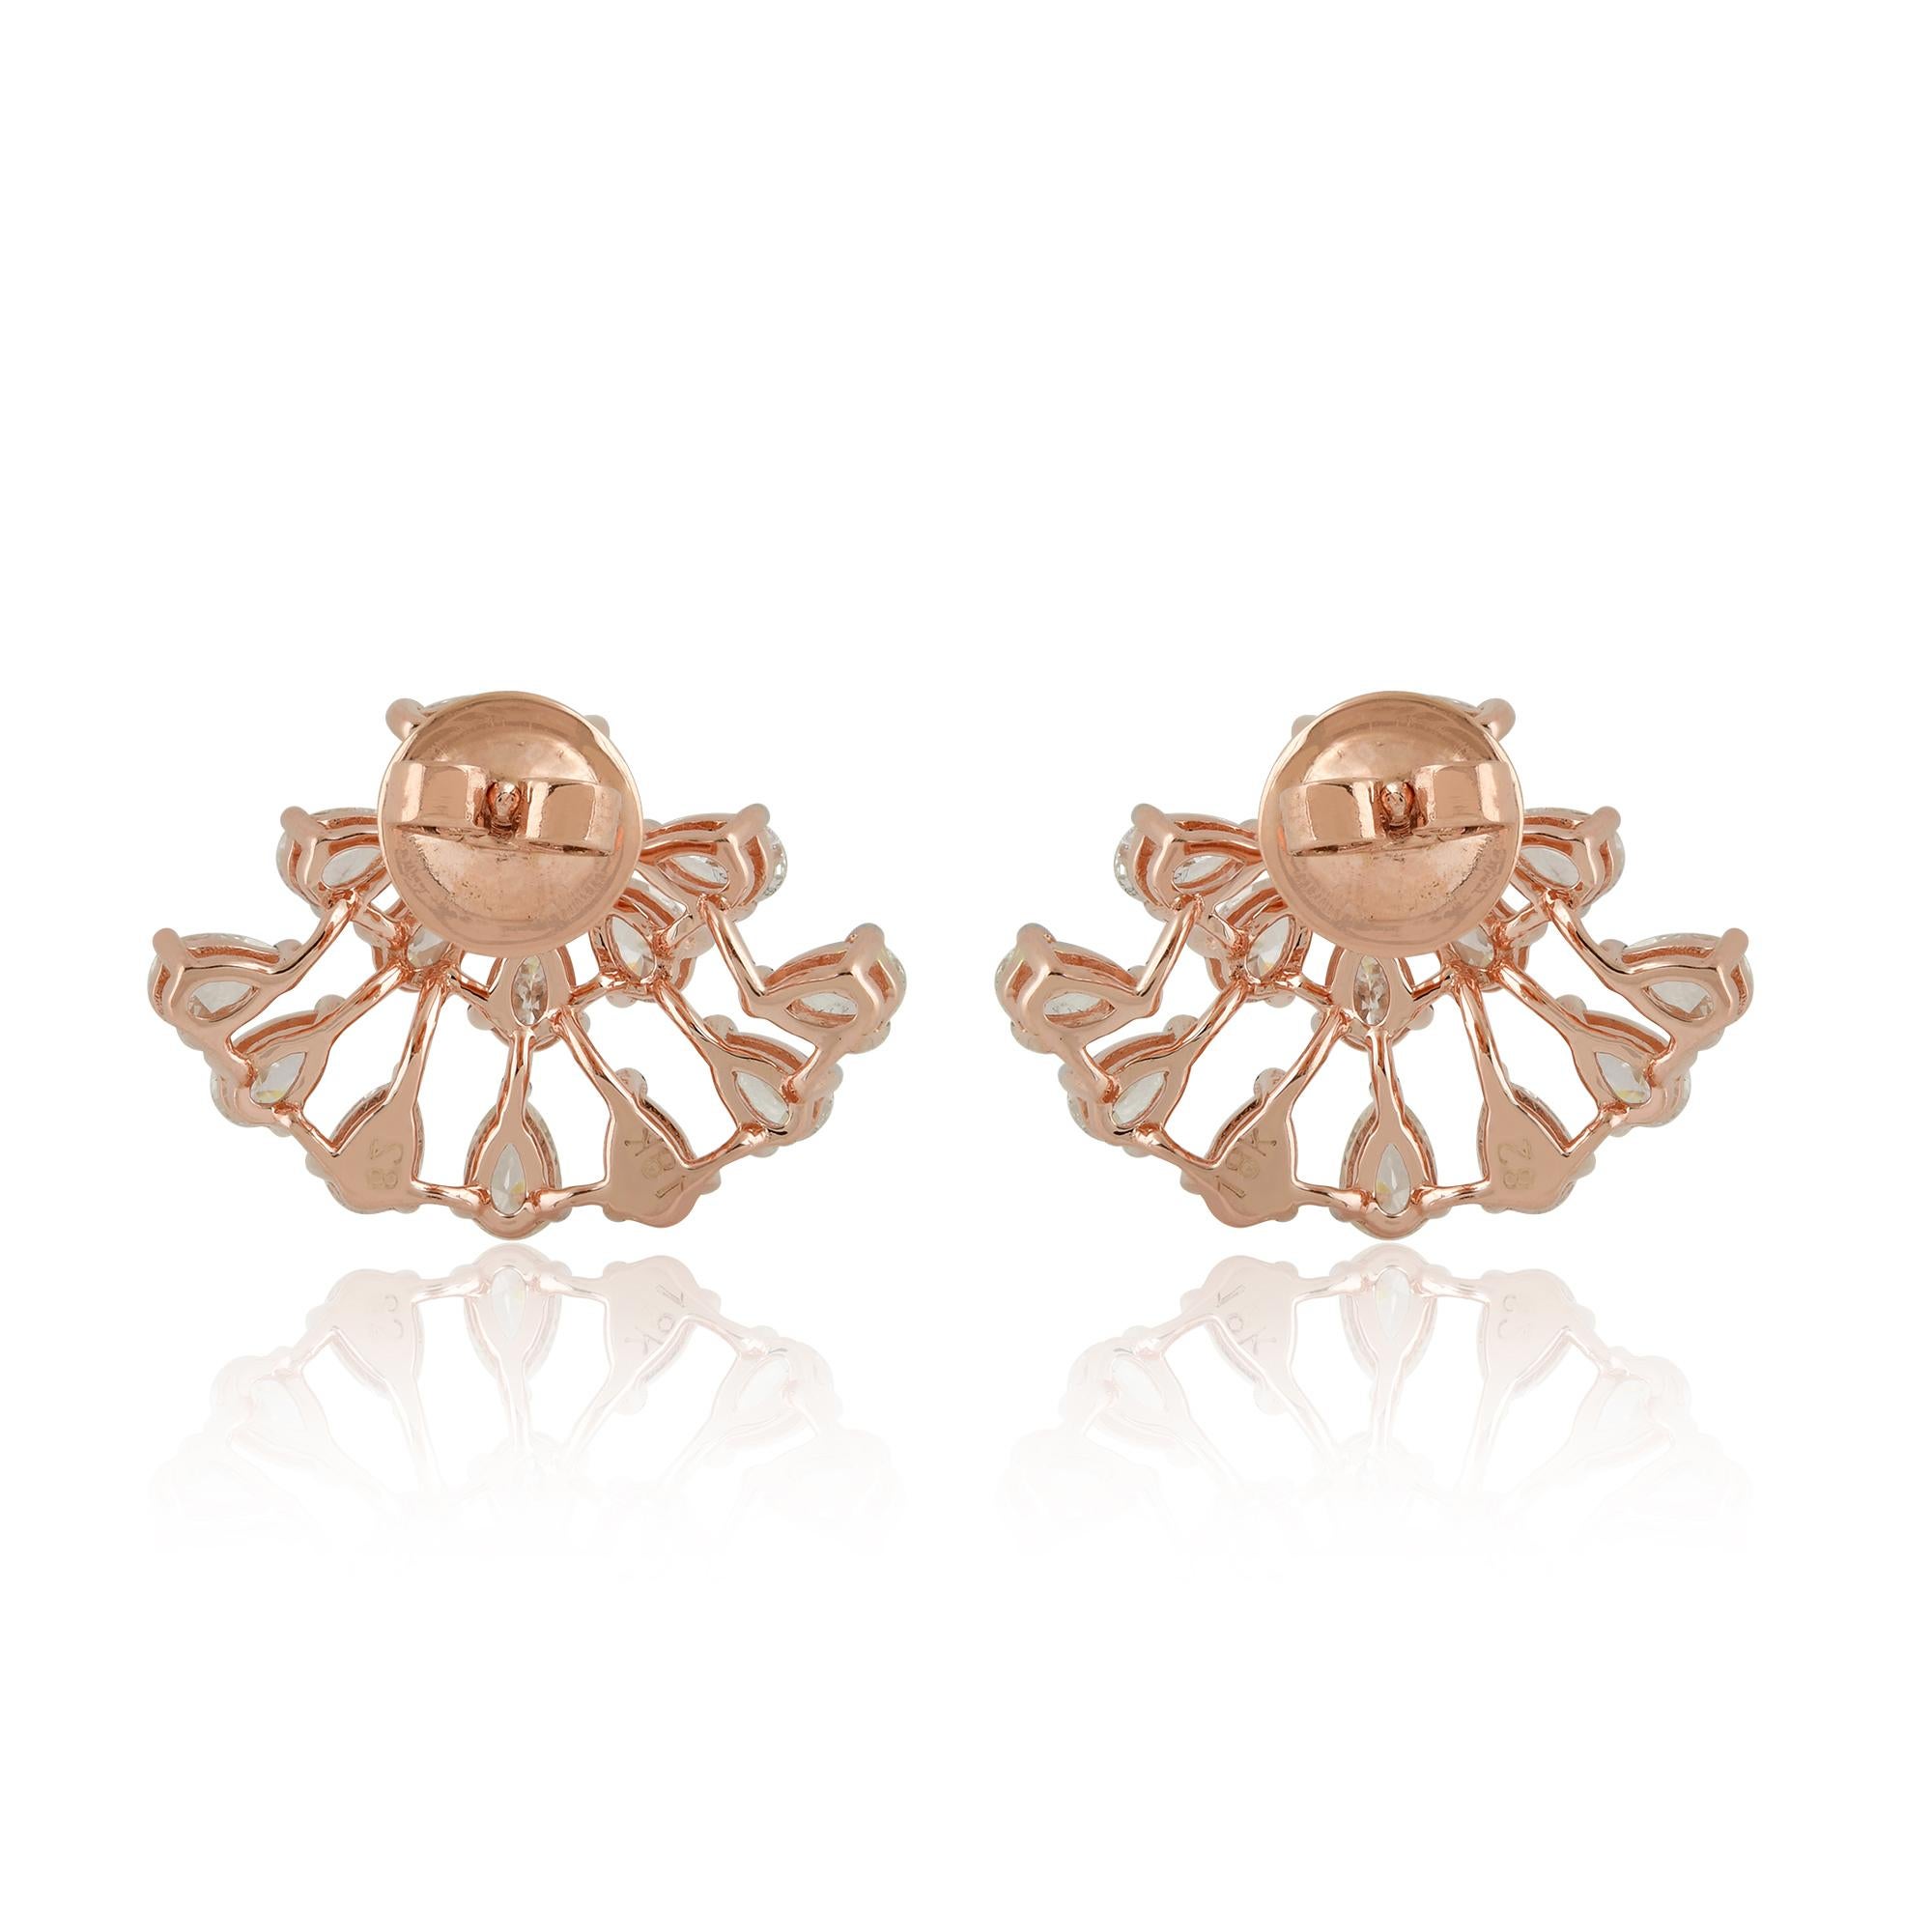 Women's 3.10 Carat Pear Shape Diamond Stud Earrings Solid 14k Rose Gold Handmade Jewelry For Sale